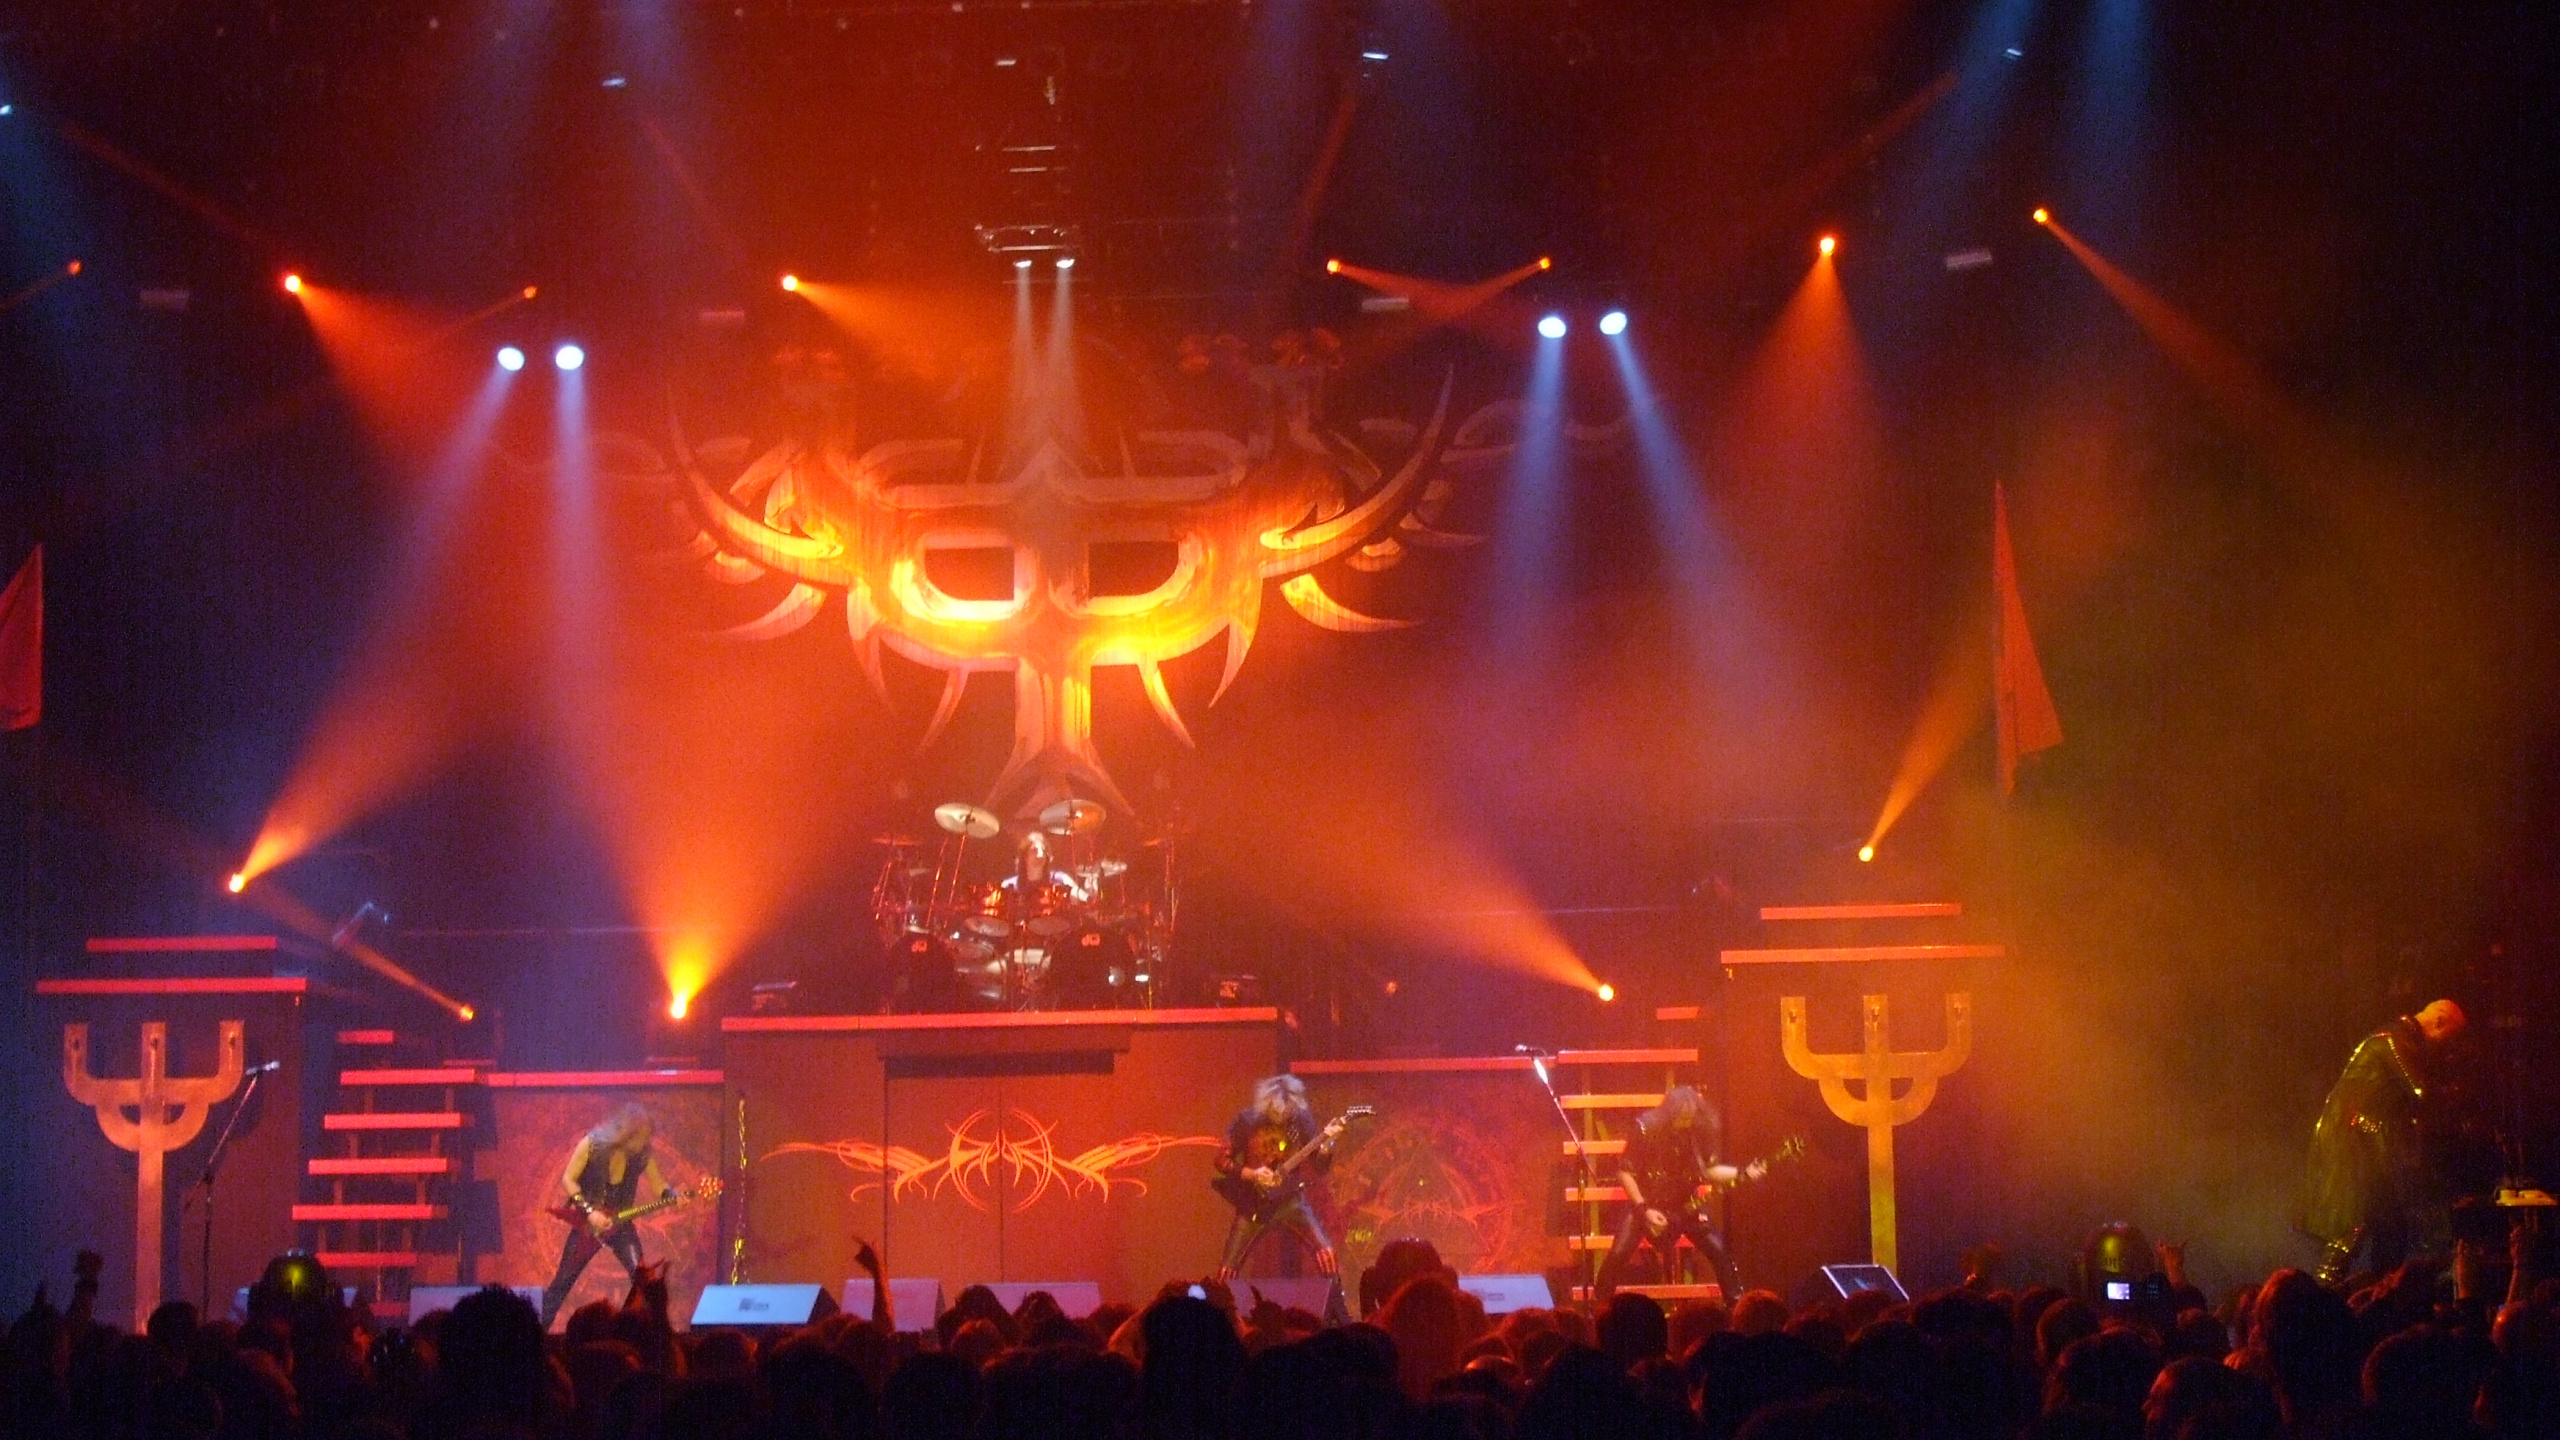 Concert de Rock, Hard Rock, le Heavy Metal, Concert, Judas Priest. Wallpaper in 2560x1440 Resolution